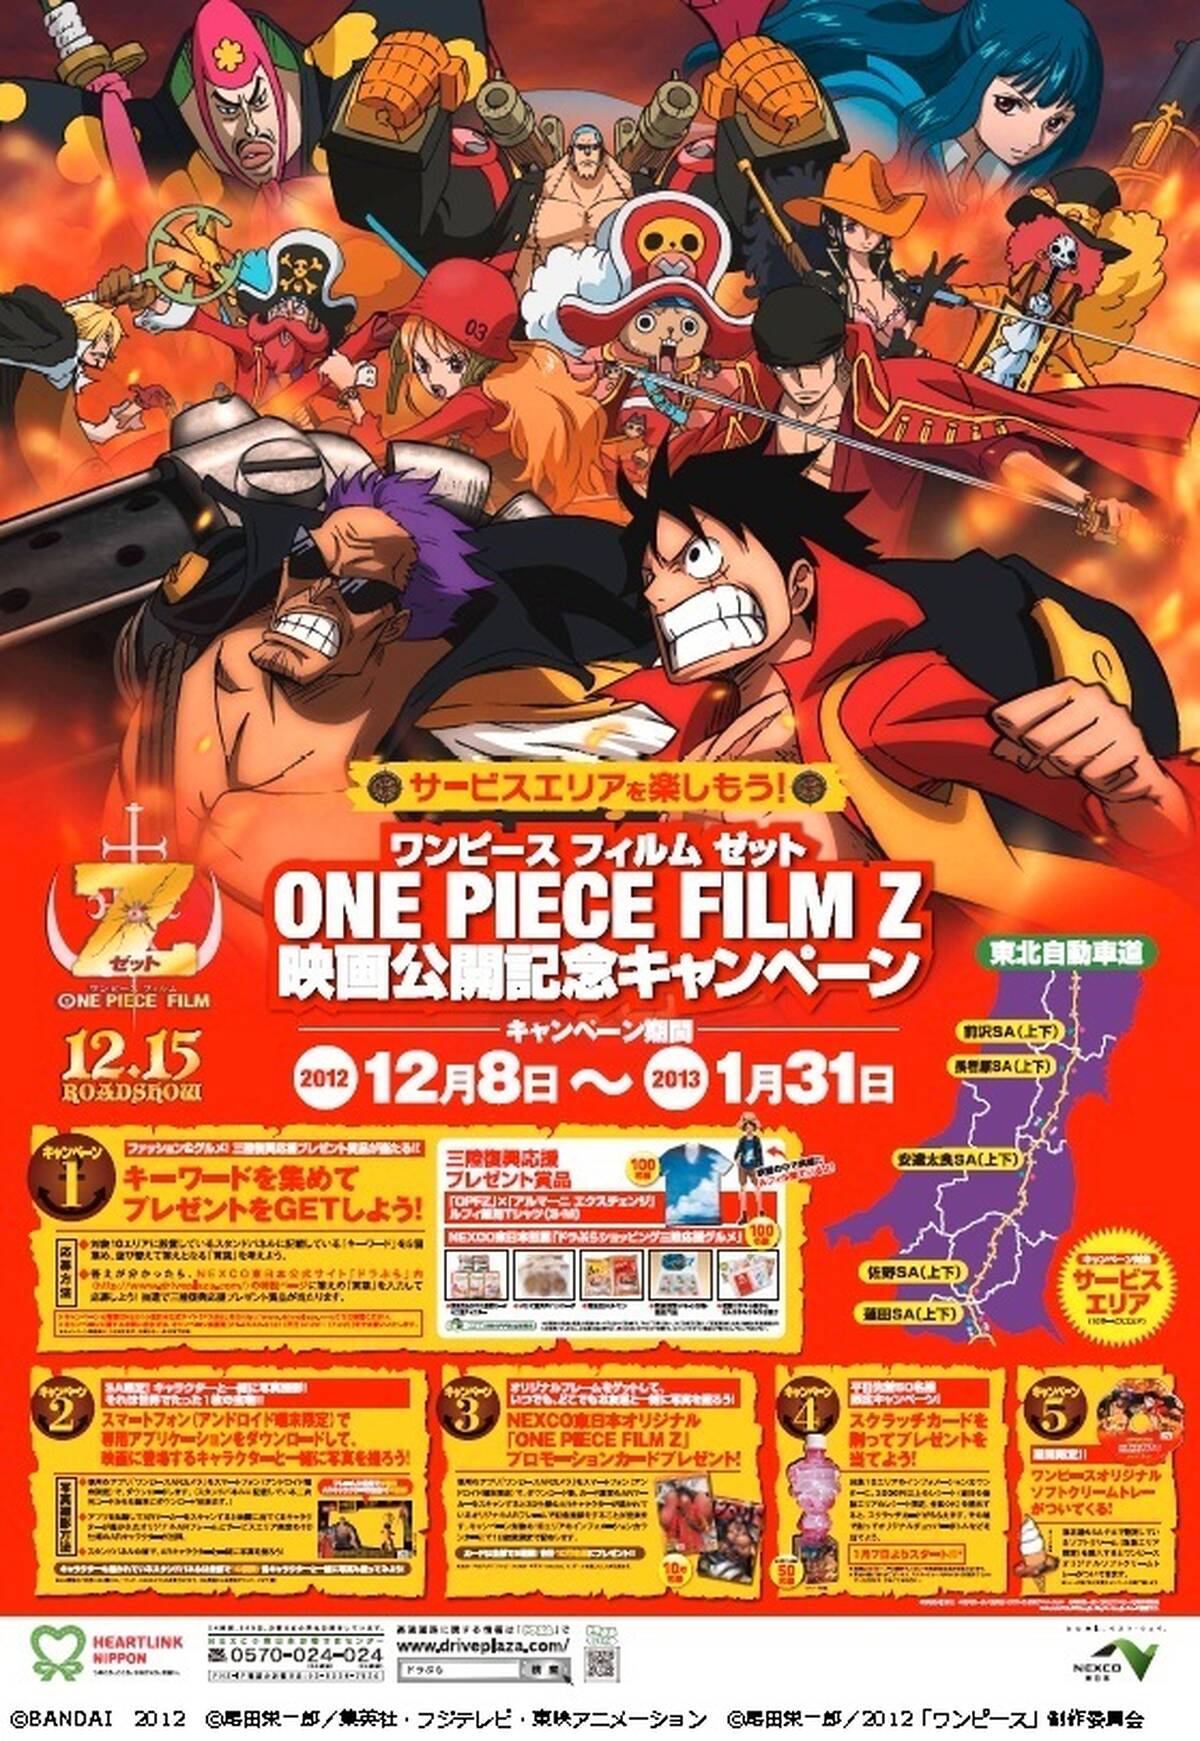 アニメ映画 One Piece Film Z 東北自動車道で公開記念キャンペーン 12月8日から アキバ総研